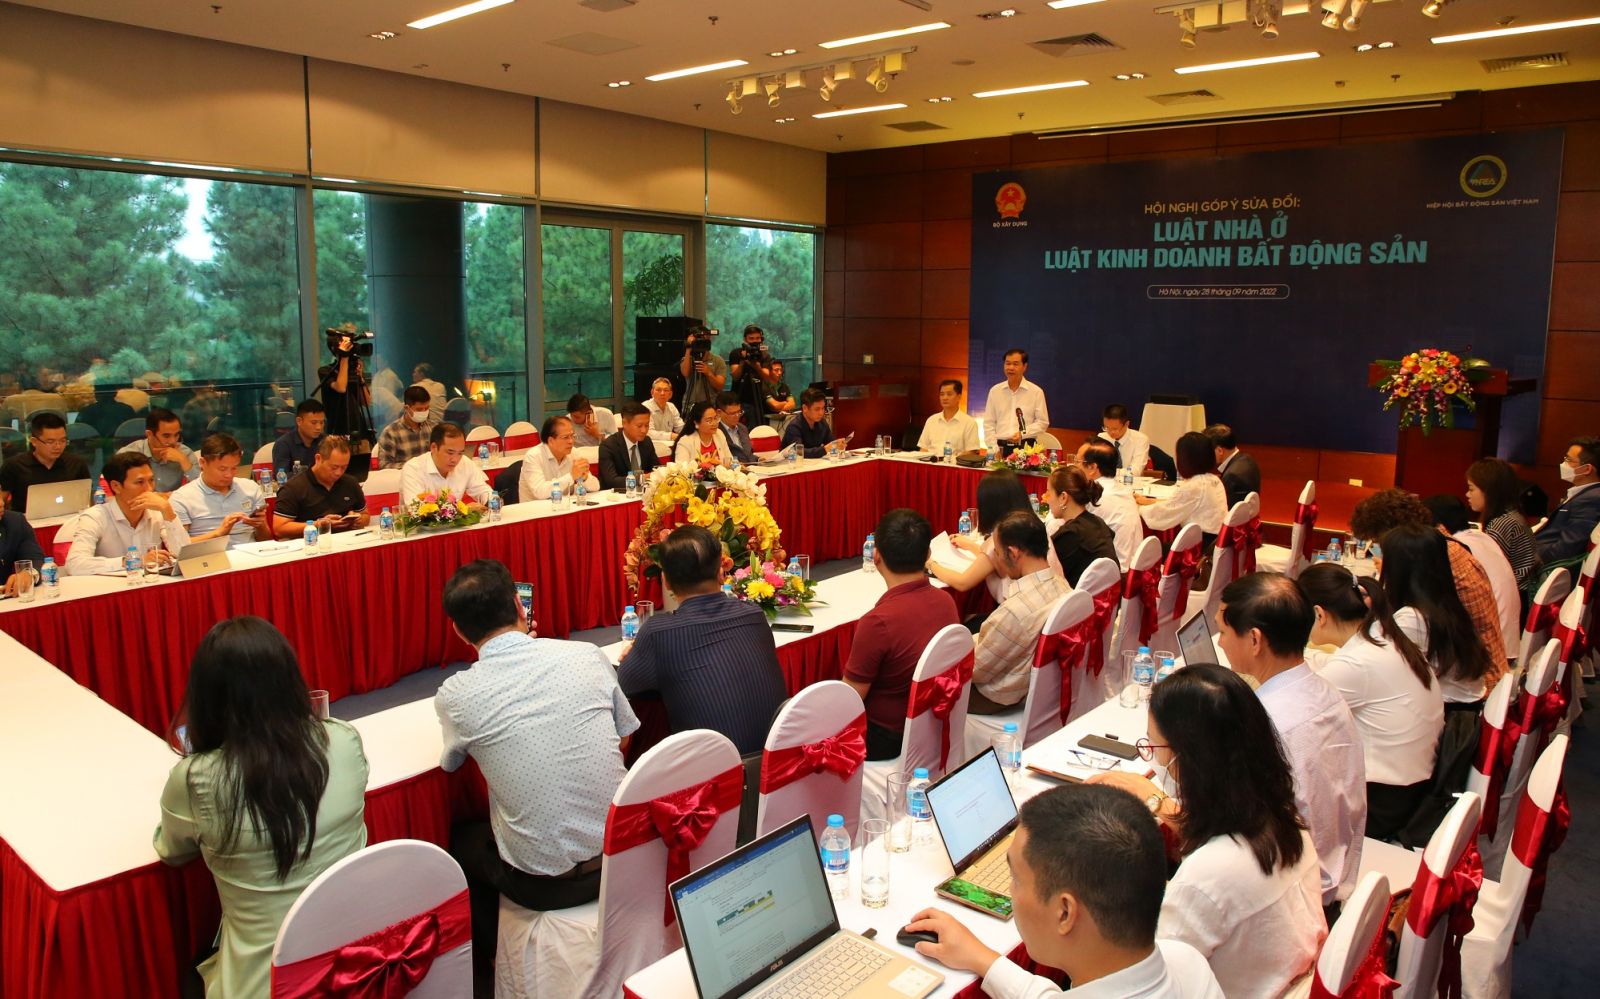 Hiệp hội Bất động sản Việt Nam tổ chức hội nghị góp ý sửa đổi Luật Nhà ở, Luật Kinh doanh Bất động sản (Ảnh: TD)